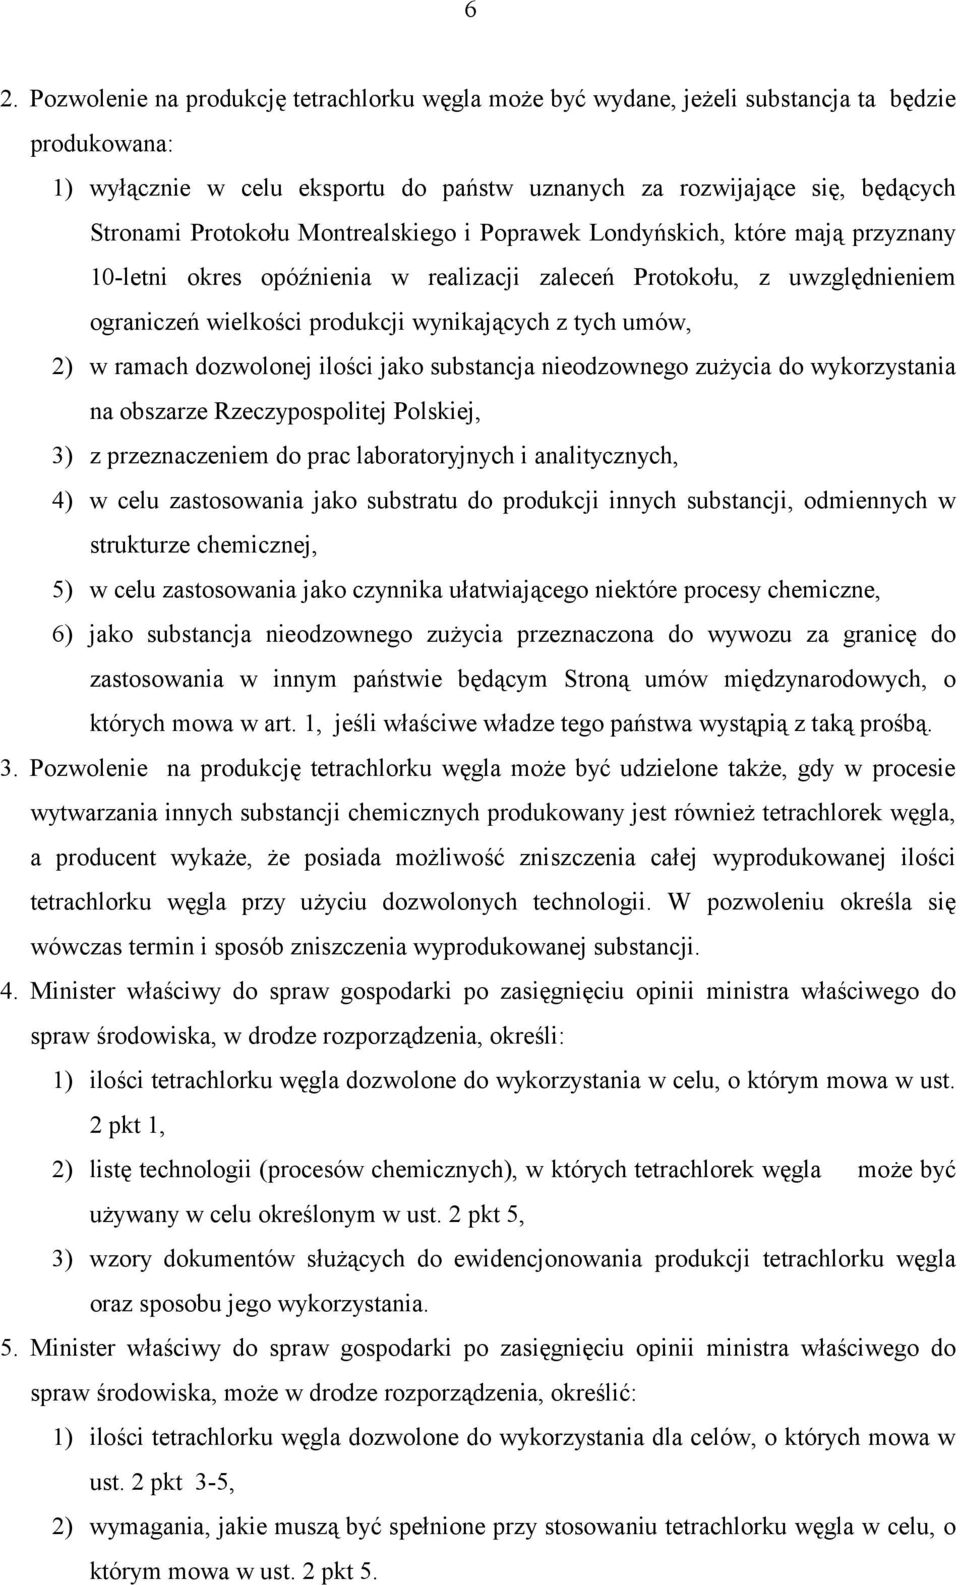 umów, 2) w ramach dozwolonej ilości jako substancja nieodzownego zużycia do wykorzystania na obszarze Rzeczypospolitej Polskiej, 3) z przeznaczeniem do prac laboratoryjnych i analitycznych, 4) w celu